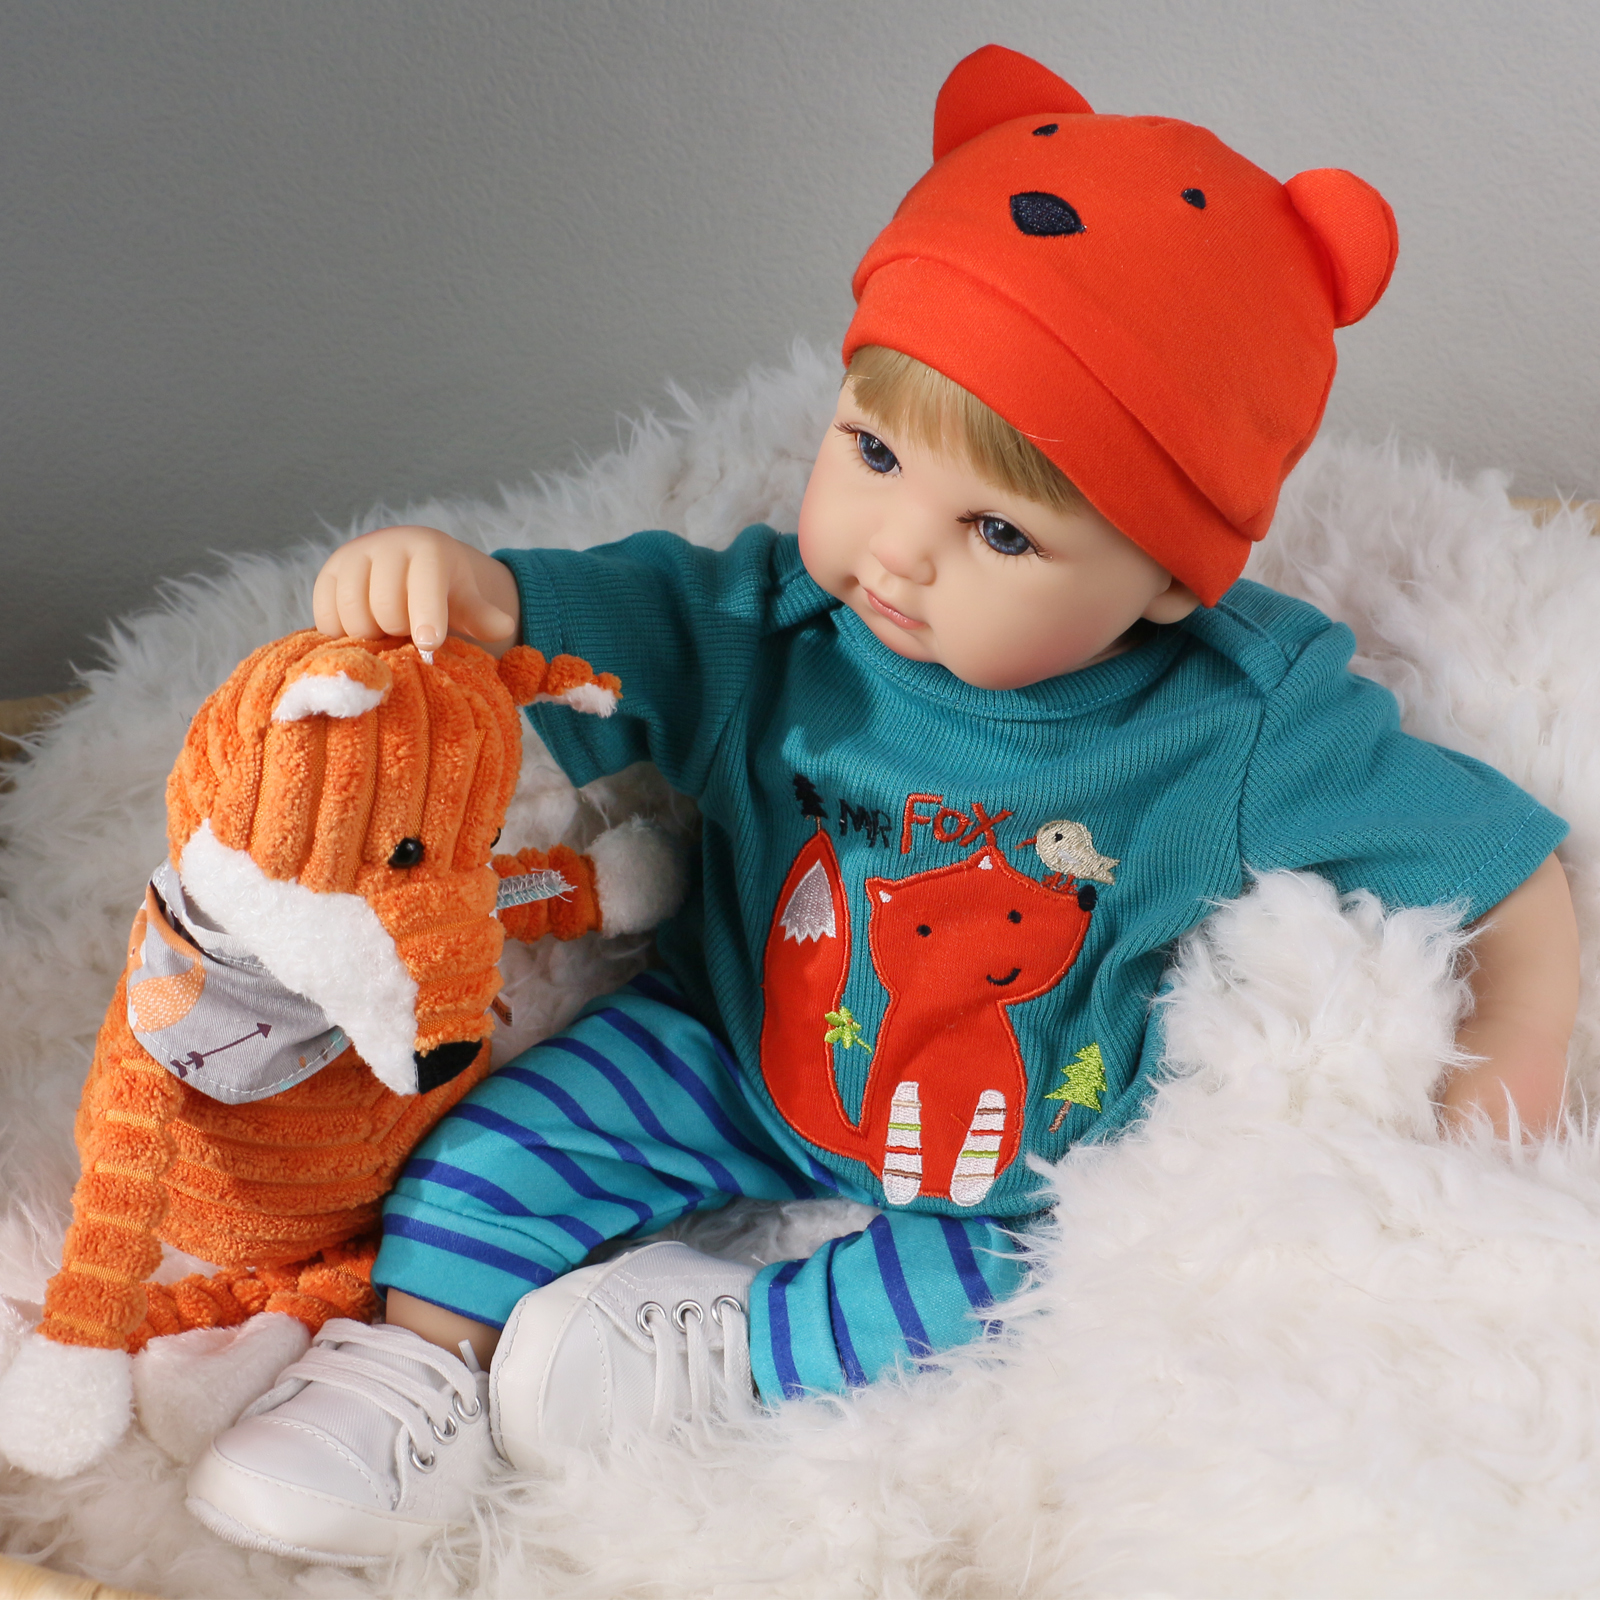 Кукла Реборн QA BABY Мишель мальчик большой пупс набор игрушки для девочки 42 см 45001 - фото 4